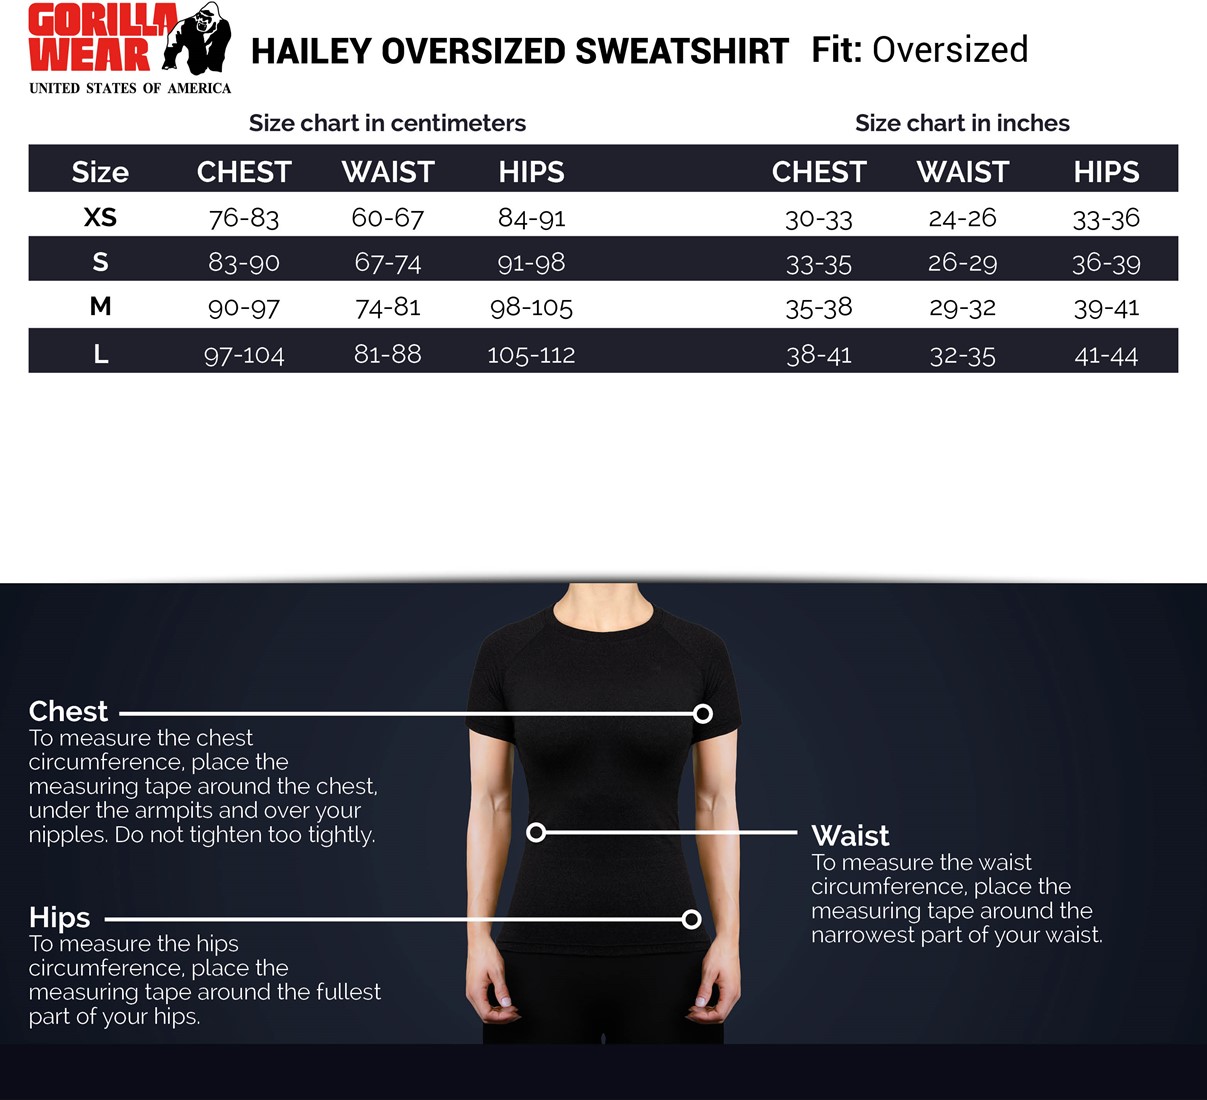 hailey-overzised-sweatshirt-sizechart (1)